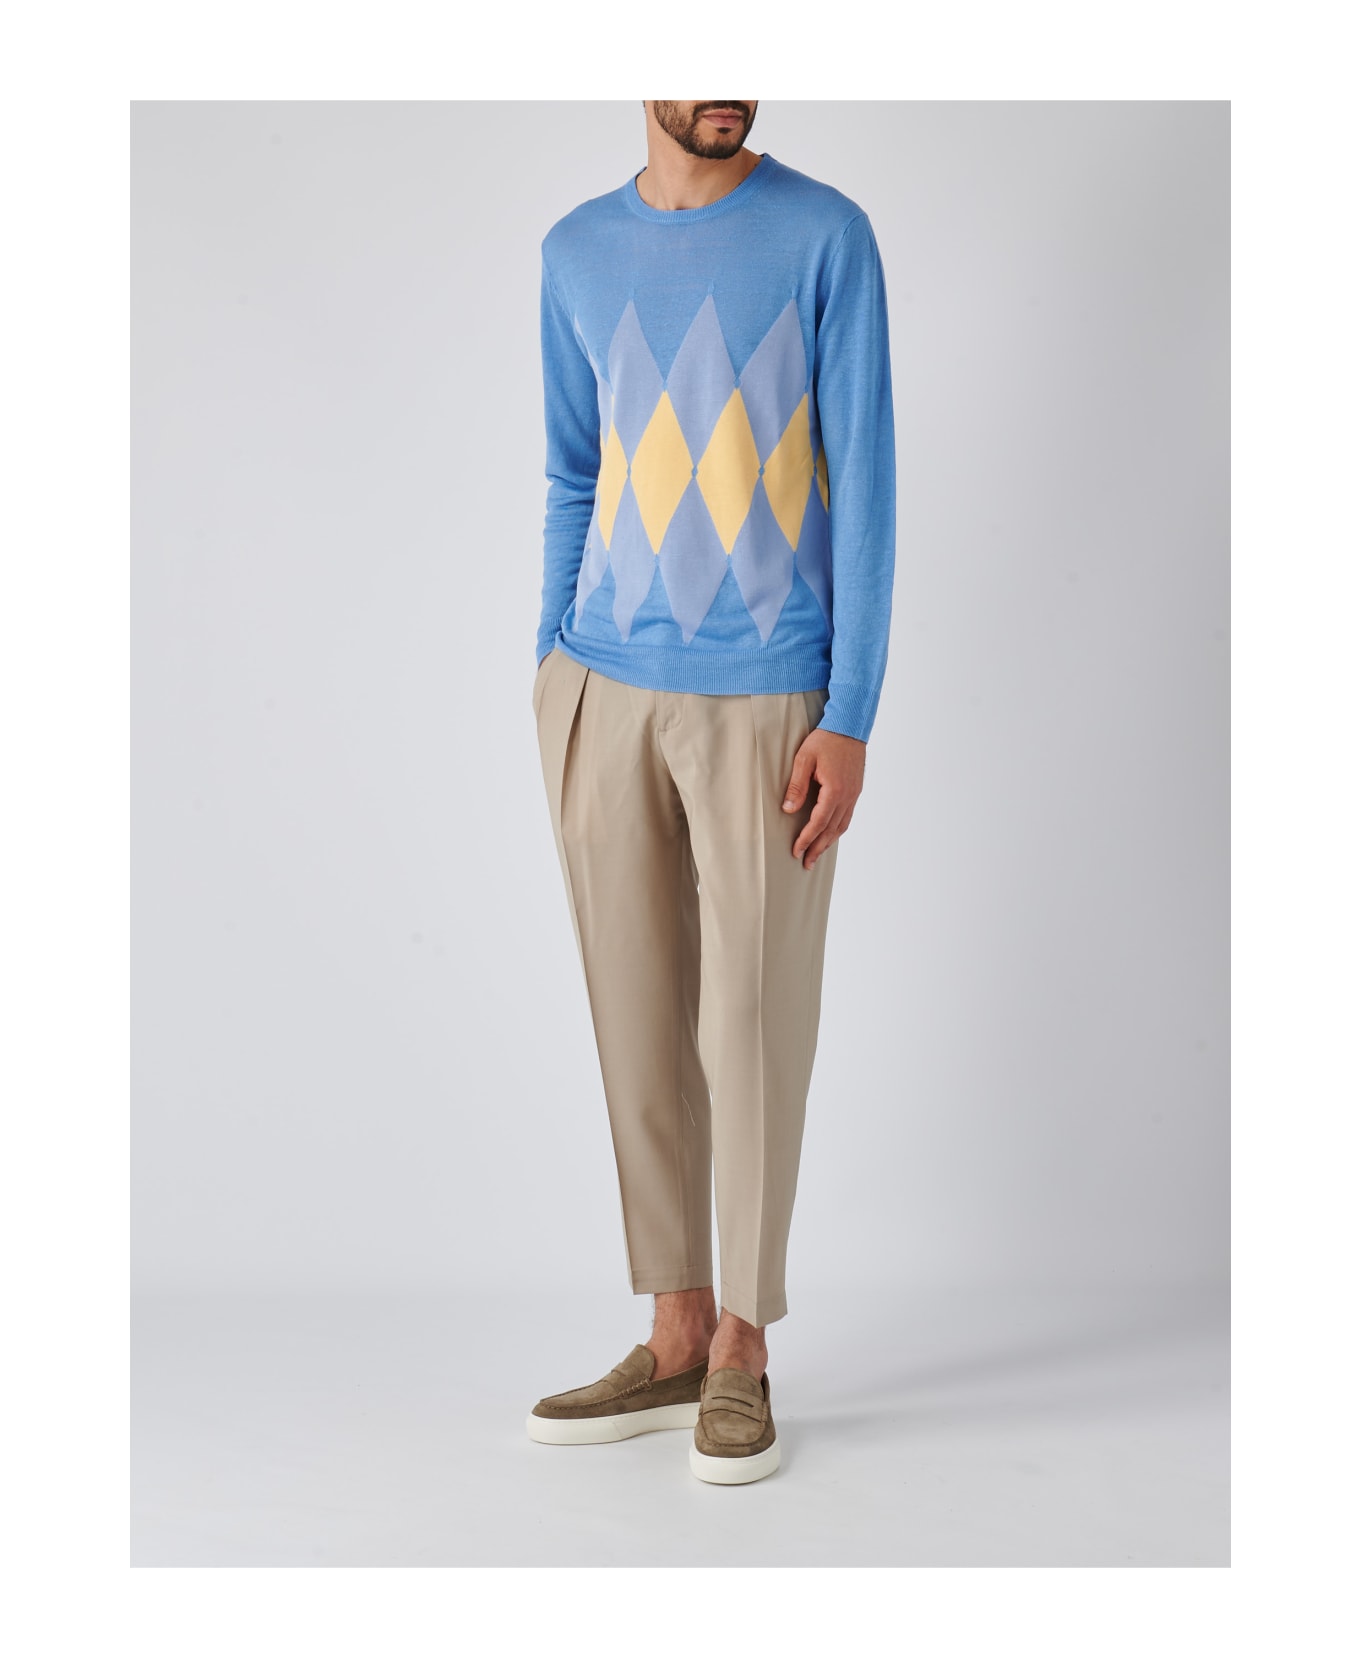 Ballantyne Neck Pullover Diamond Sweater - CIELO-GIALLO ニットウェア